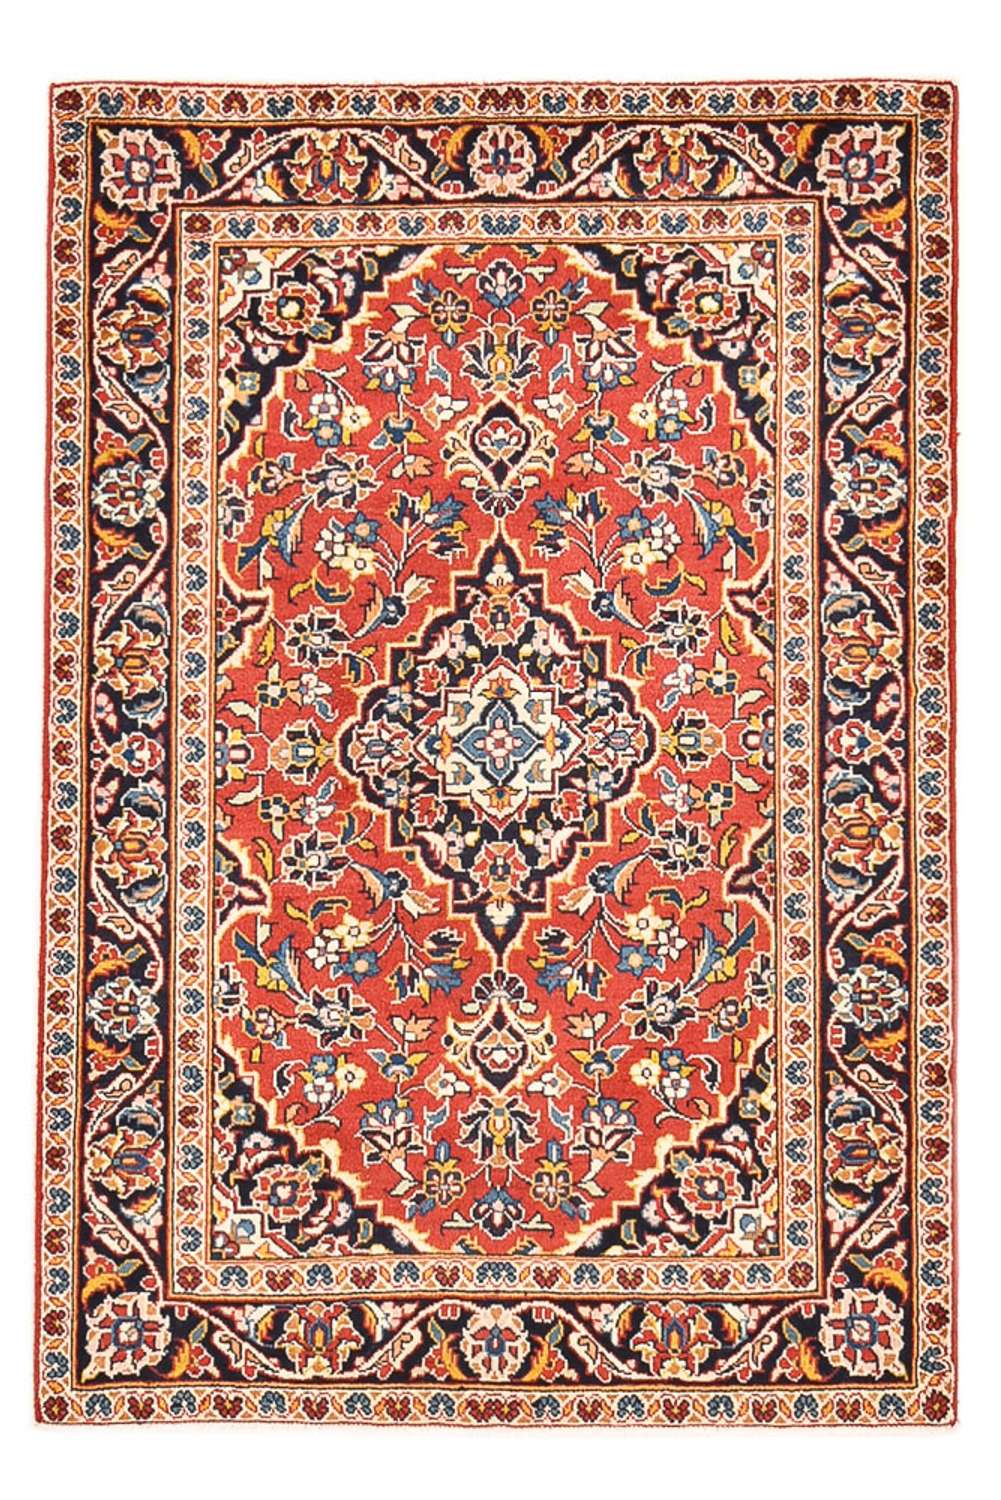 Dywan perski - Keshan - 148 x 100 cm - czerwony